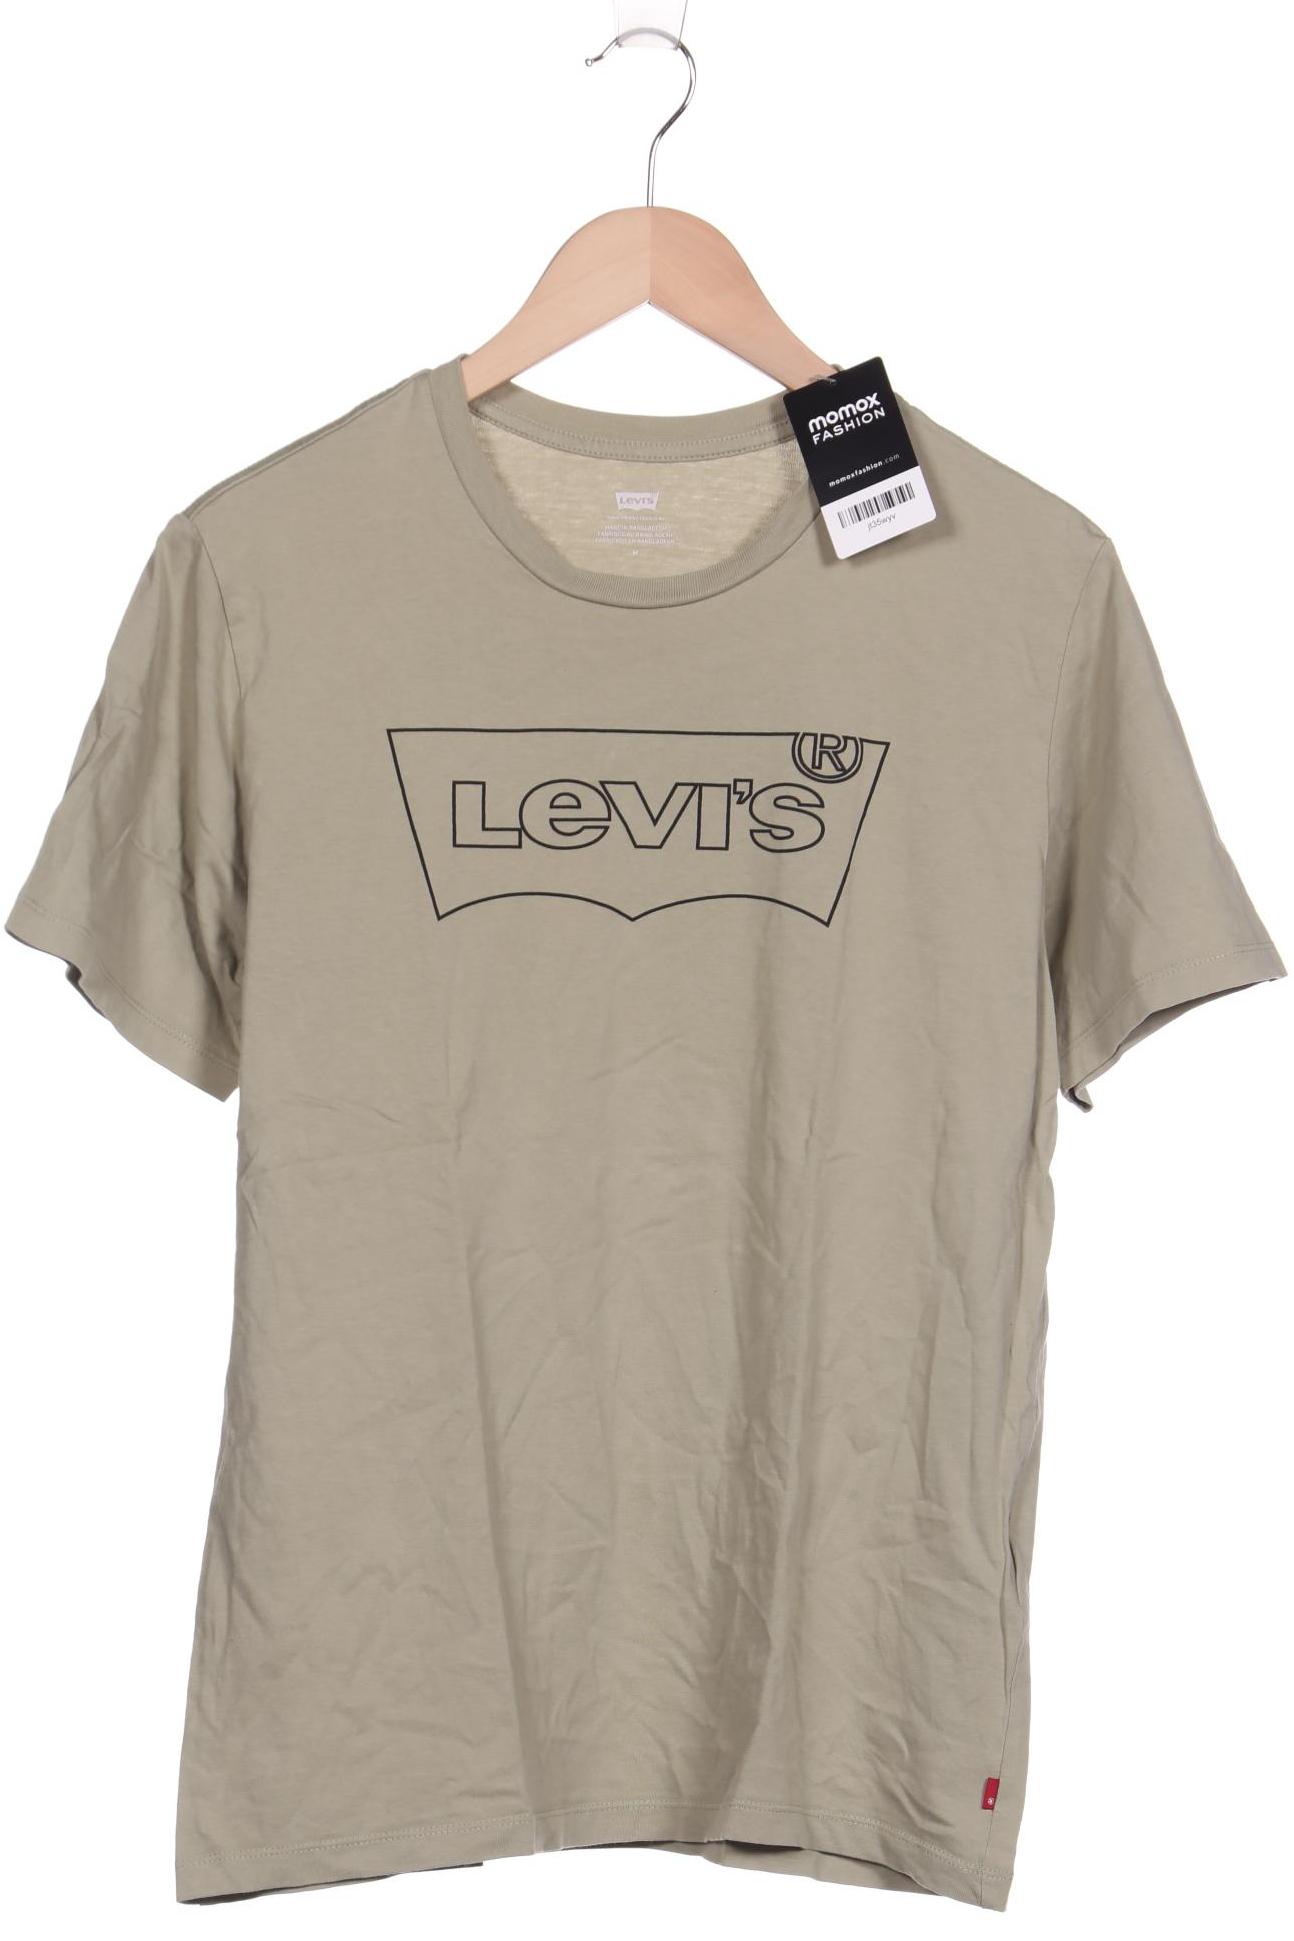 Levis Damen T-Shirt, beige, Gr. 38 von Levis